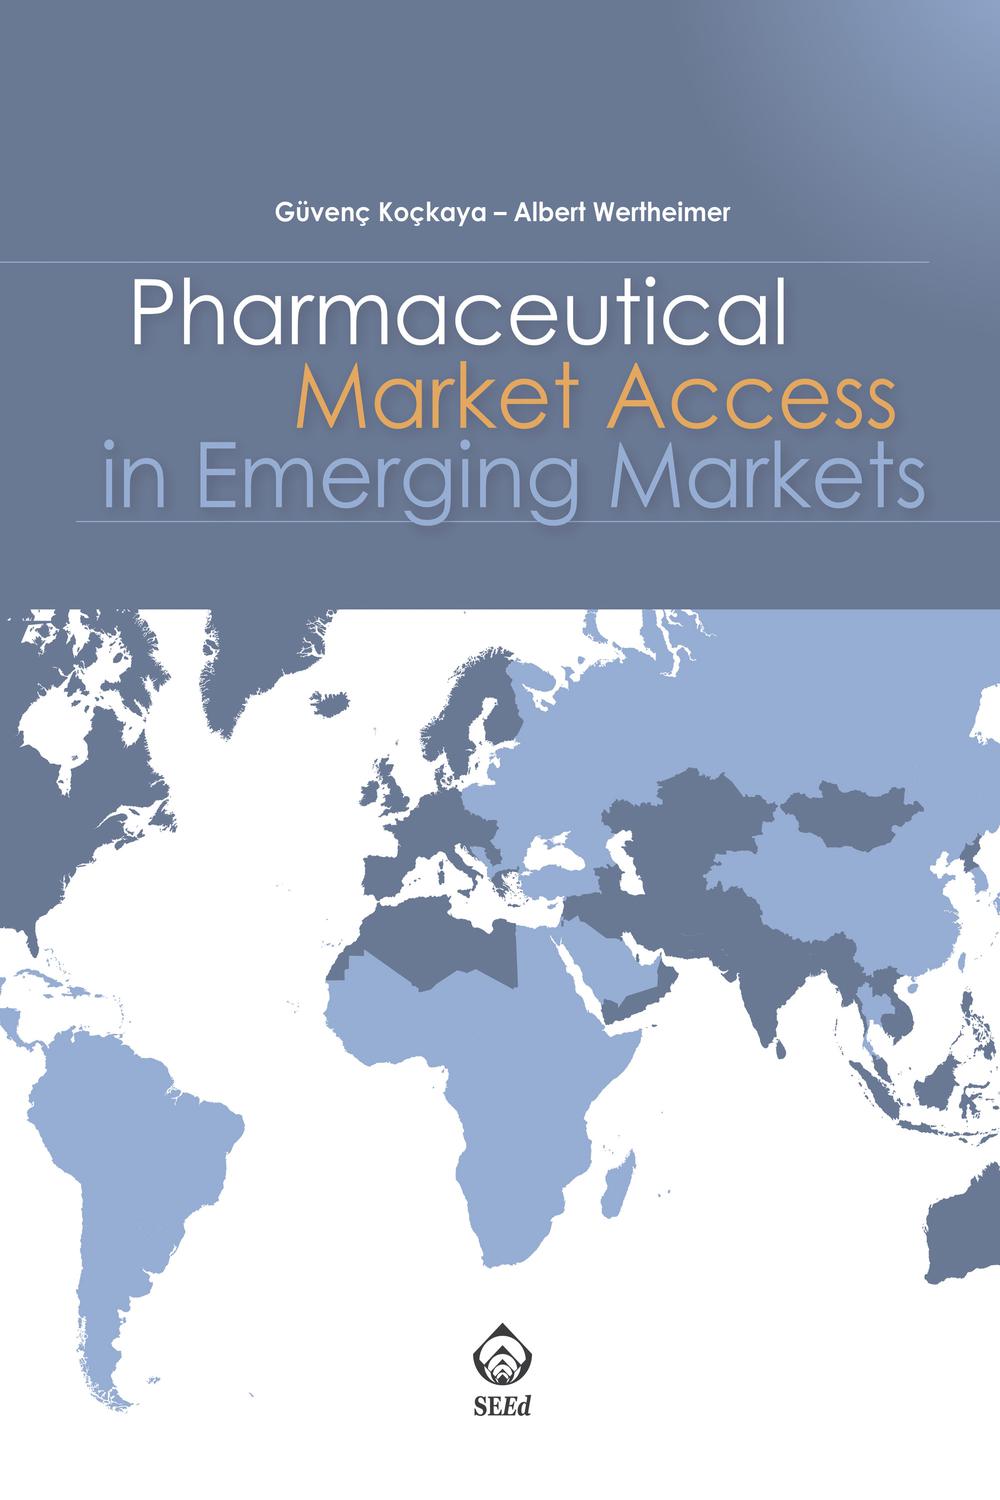 Pharmaceutical Market Access in Emerging Markets - Güvenç Koçkaya, Albert Wertheimer